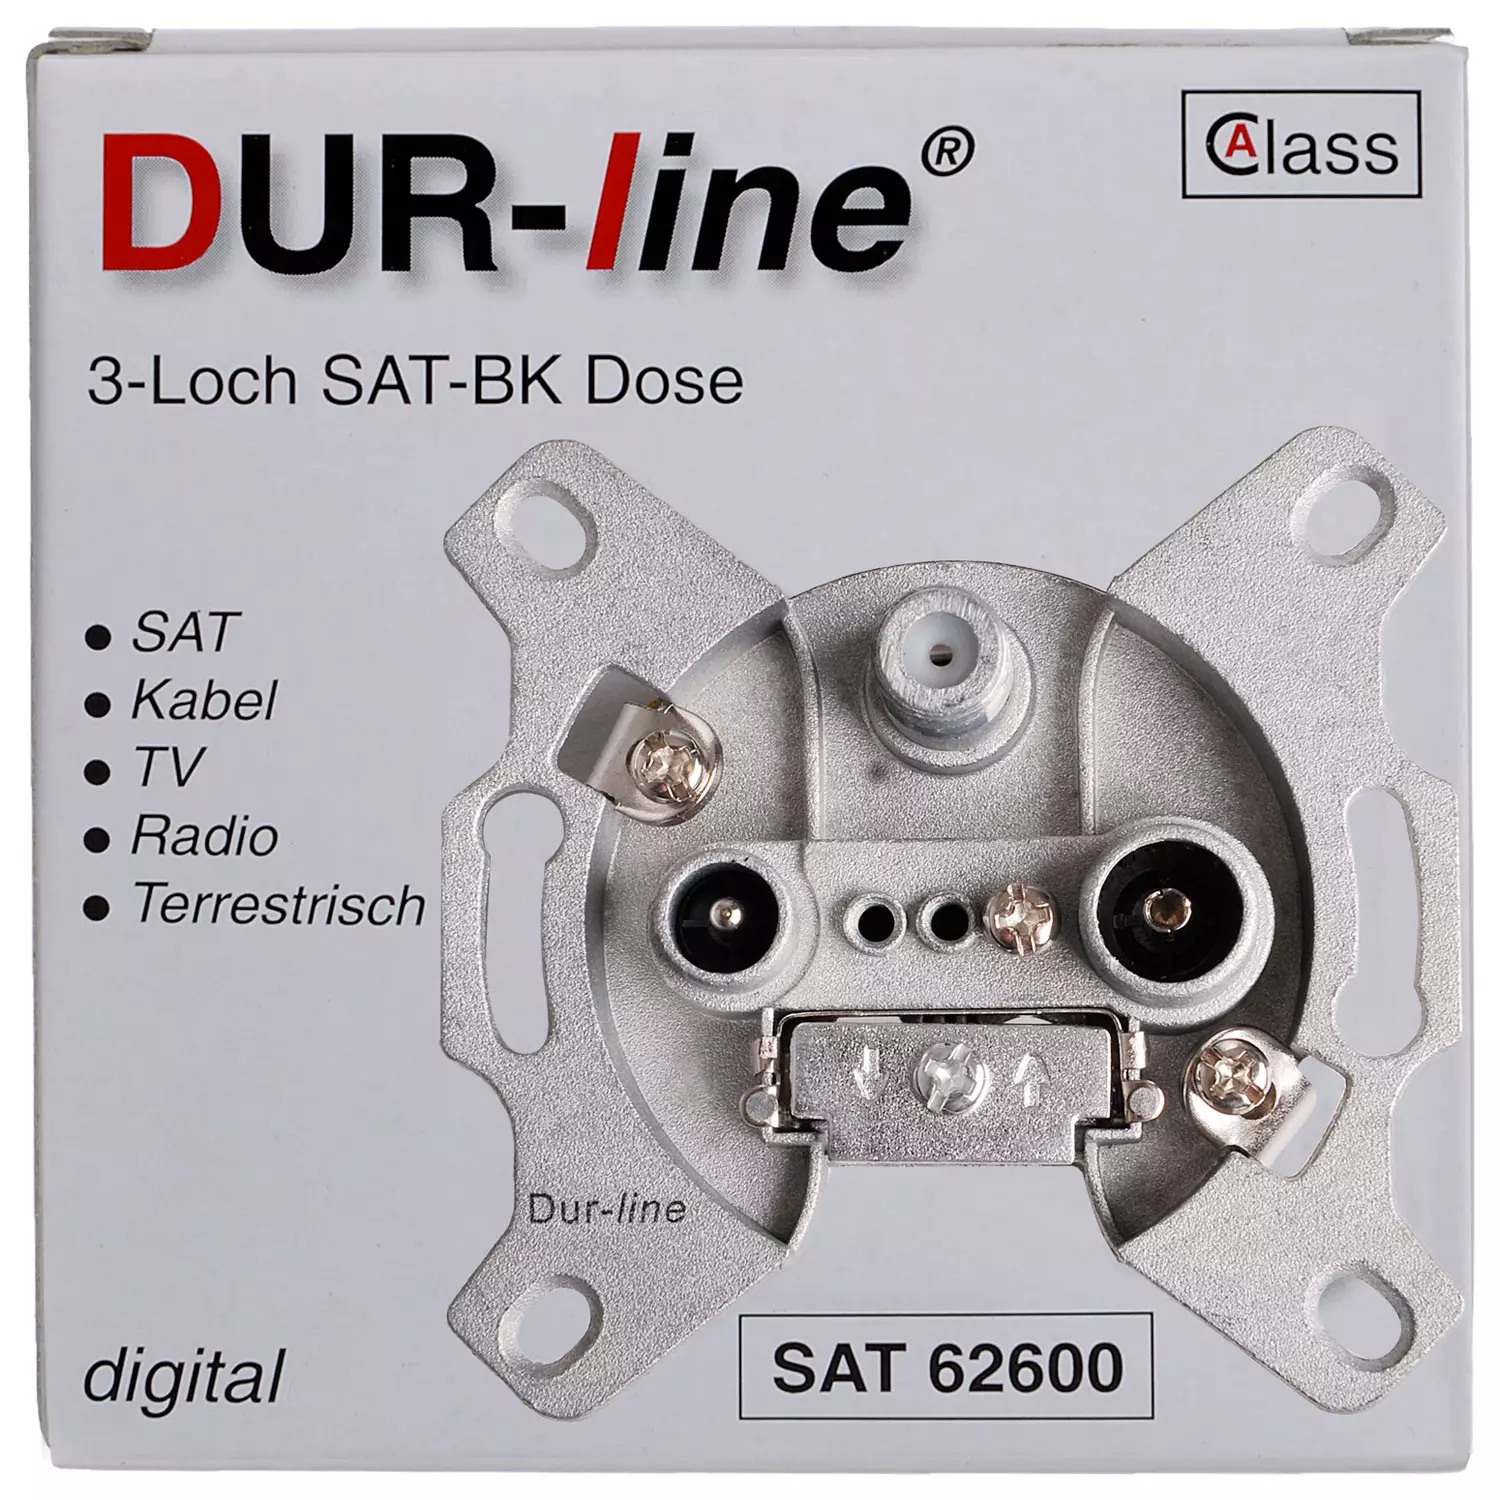 Dur-line Sat-BK Enddose 3-Loch 2 dB